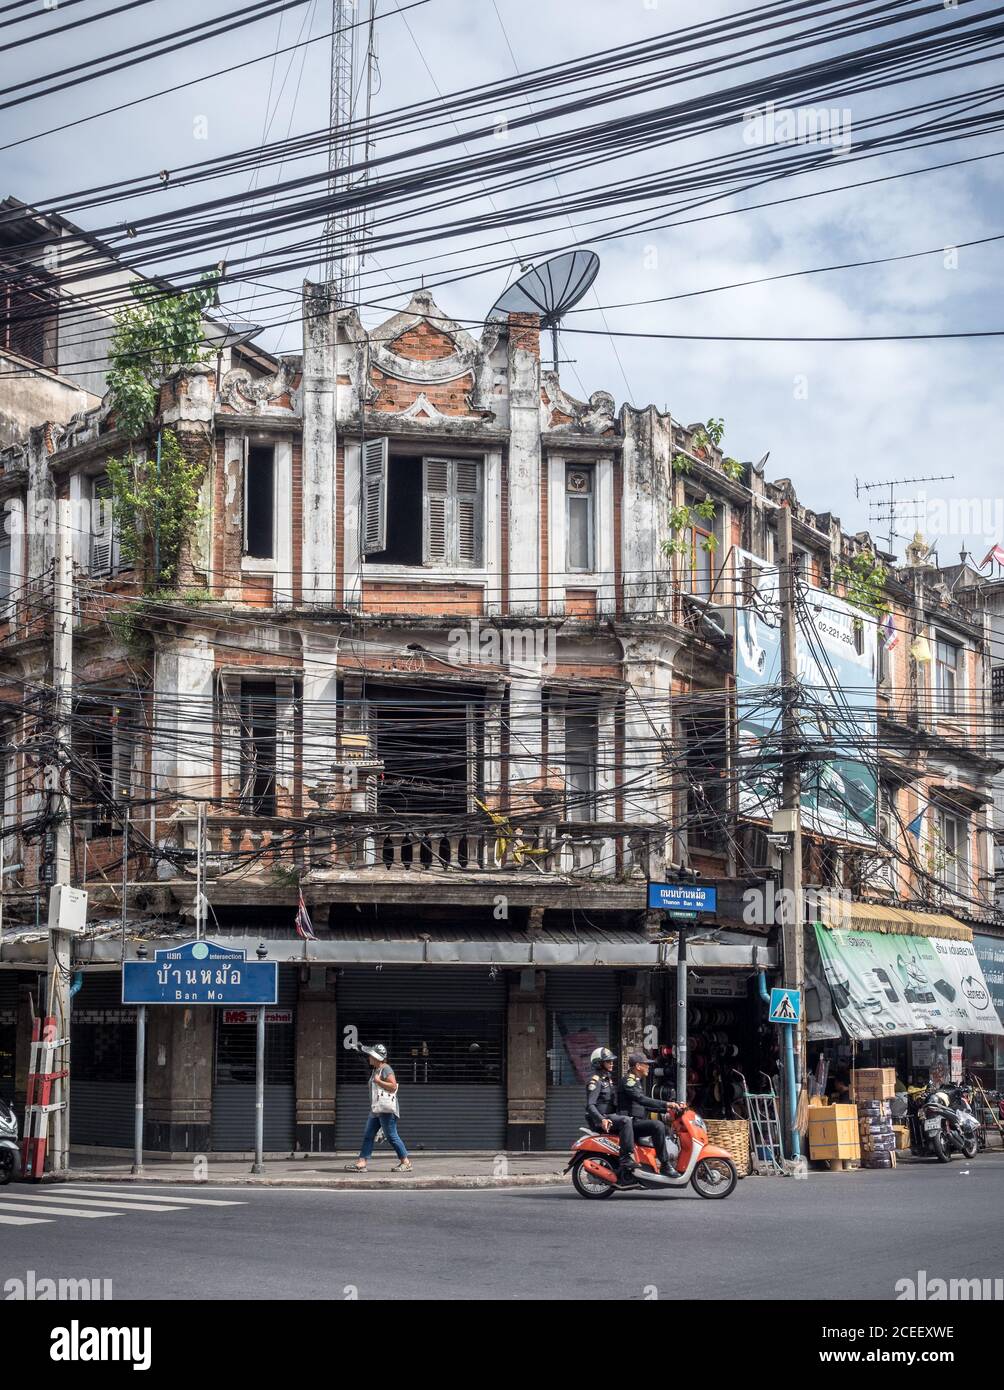 Bangkok, Thaïlande, Asie du Sud-est - deux personnes à moto et une dame marchant devant l'ancien bâtiment. Câbles électriques compliqués. Banque D'Images